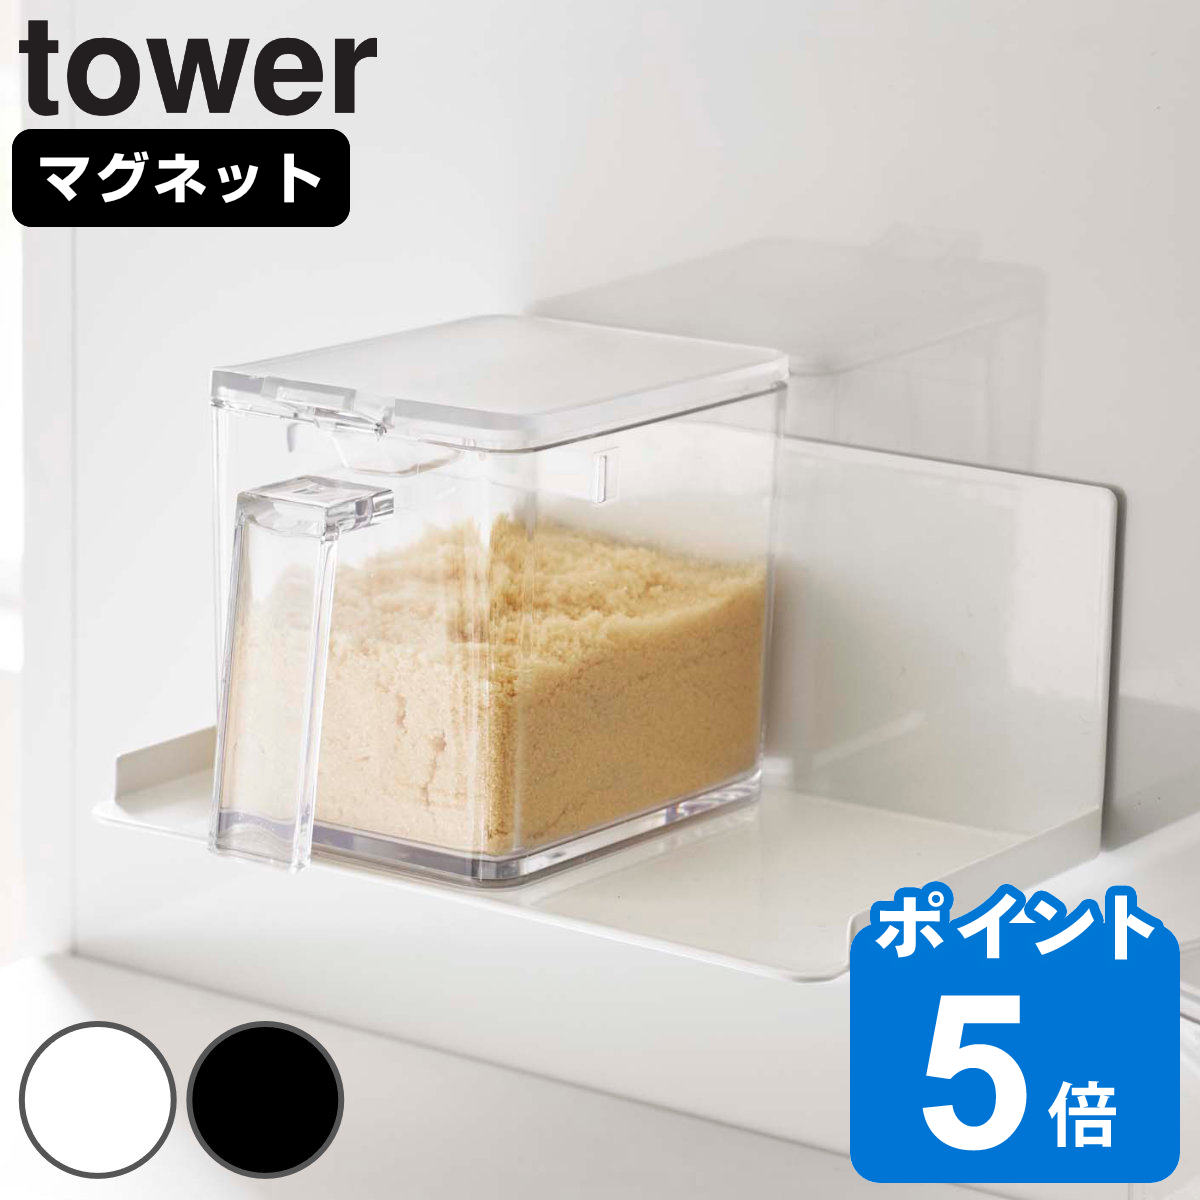 山崎実業 tower マグネット調味料ストッカーラック タワー 対応パーツ